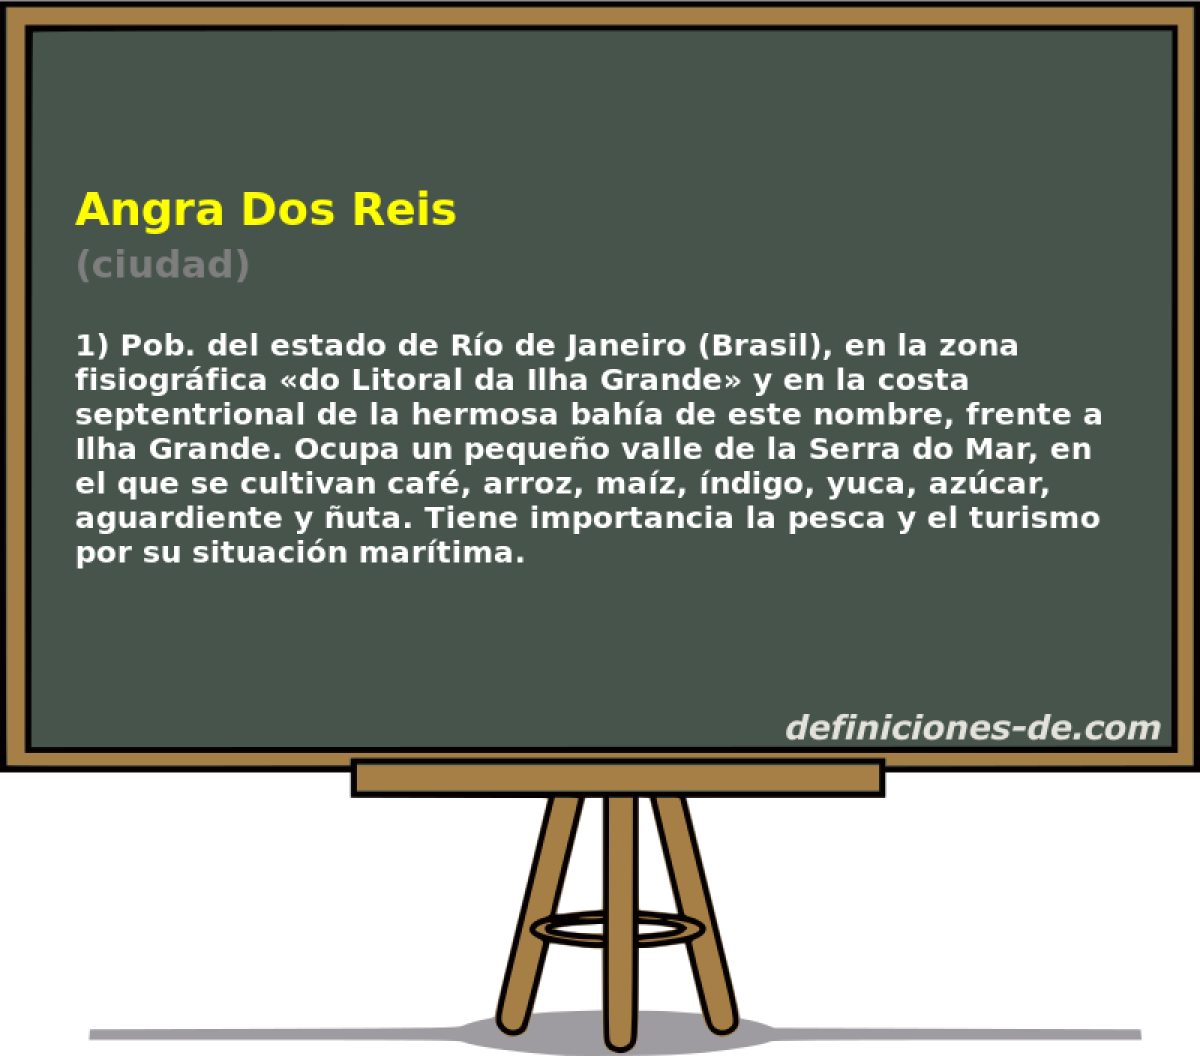 Angra Dos Reis (ciudad)